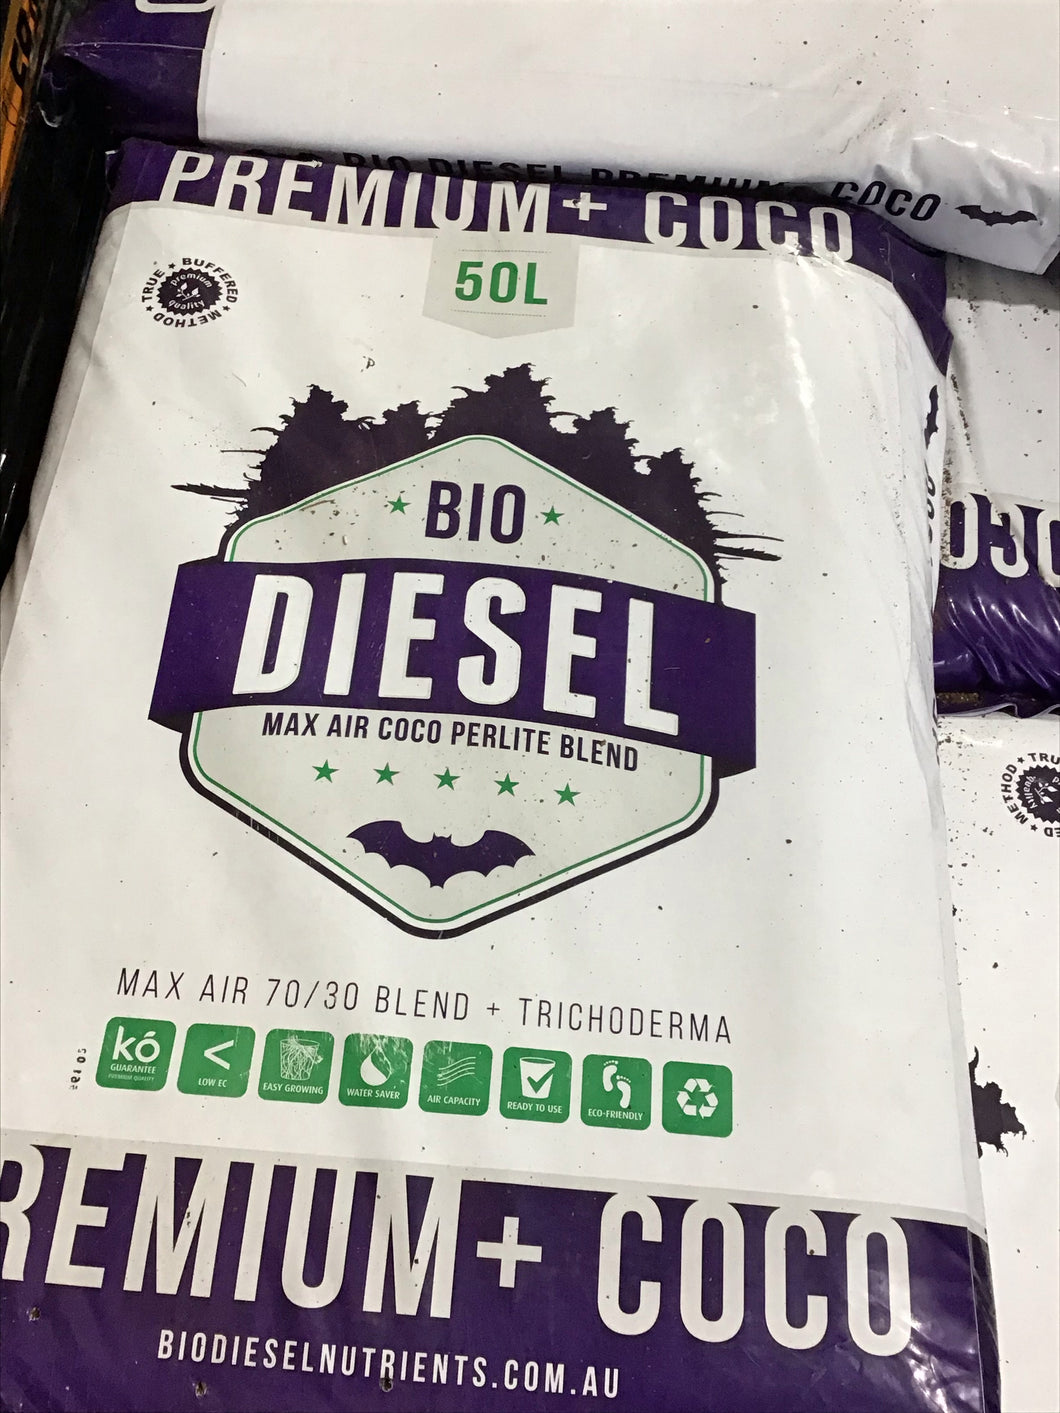 Bio Diesel Premium + Coco 50L